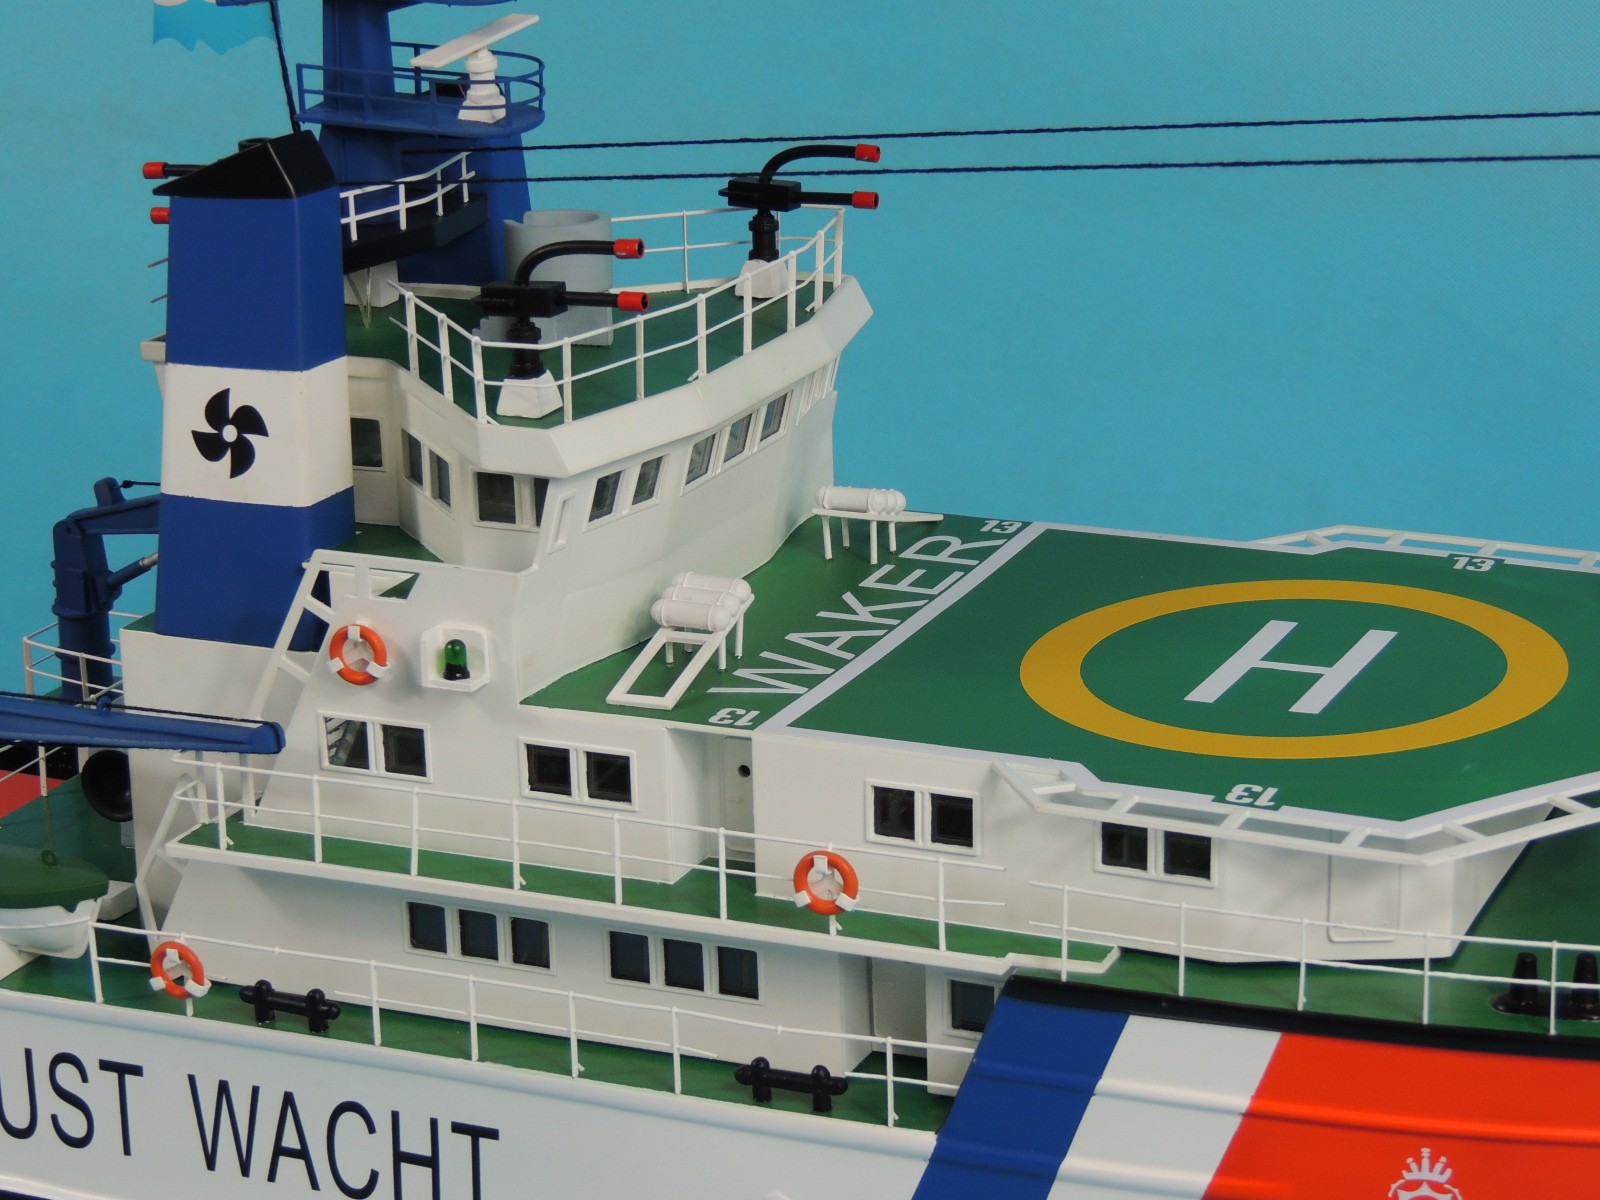 鹿特丹拖船 鹿特丹号拖轮,拖船收费标准,鹿特丹班轮 作者:航者行天下 6052 